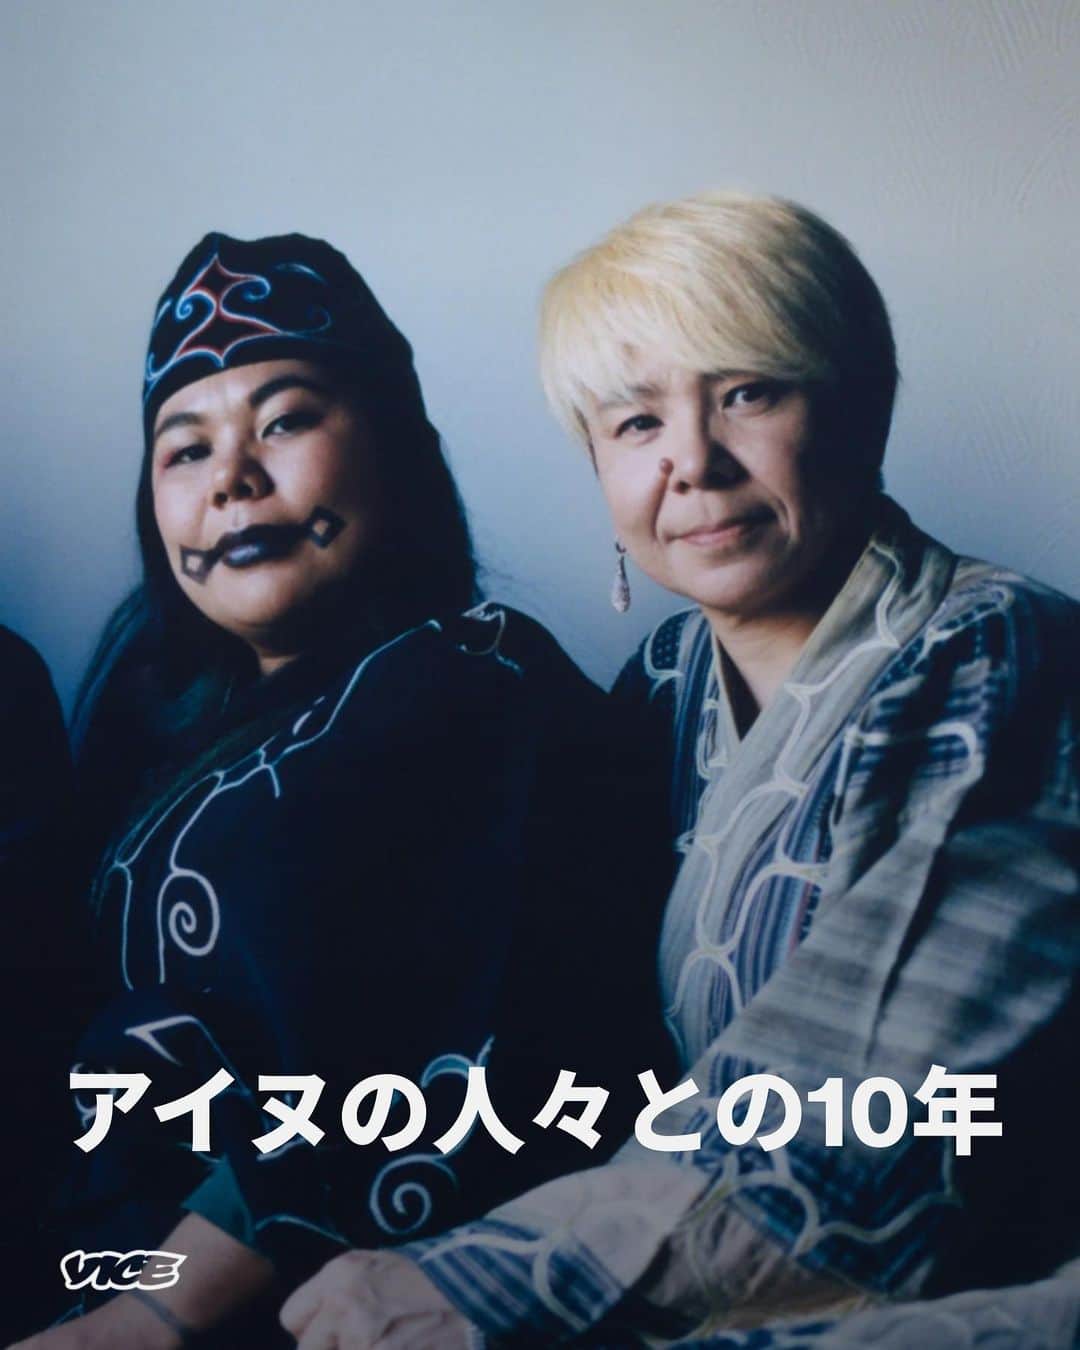 VICE Japanのインスタグラム